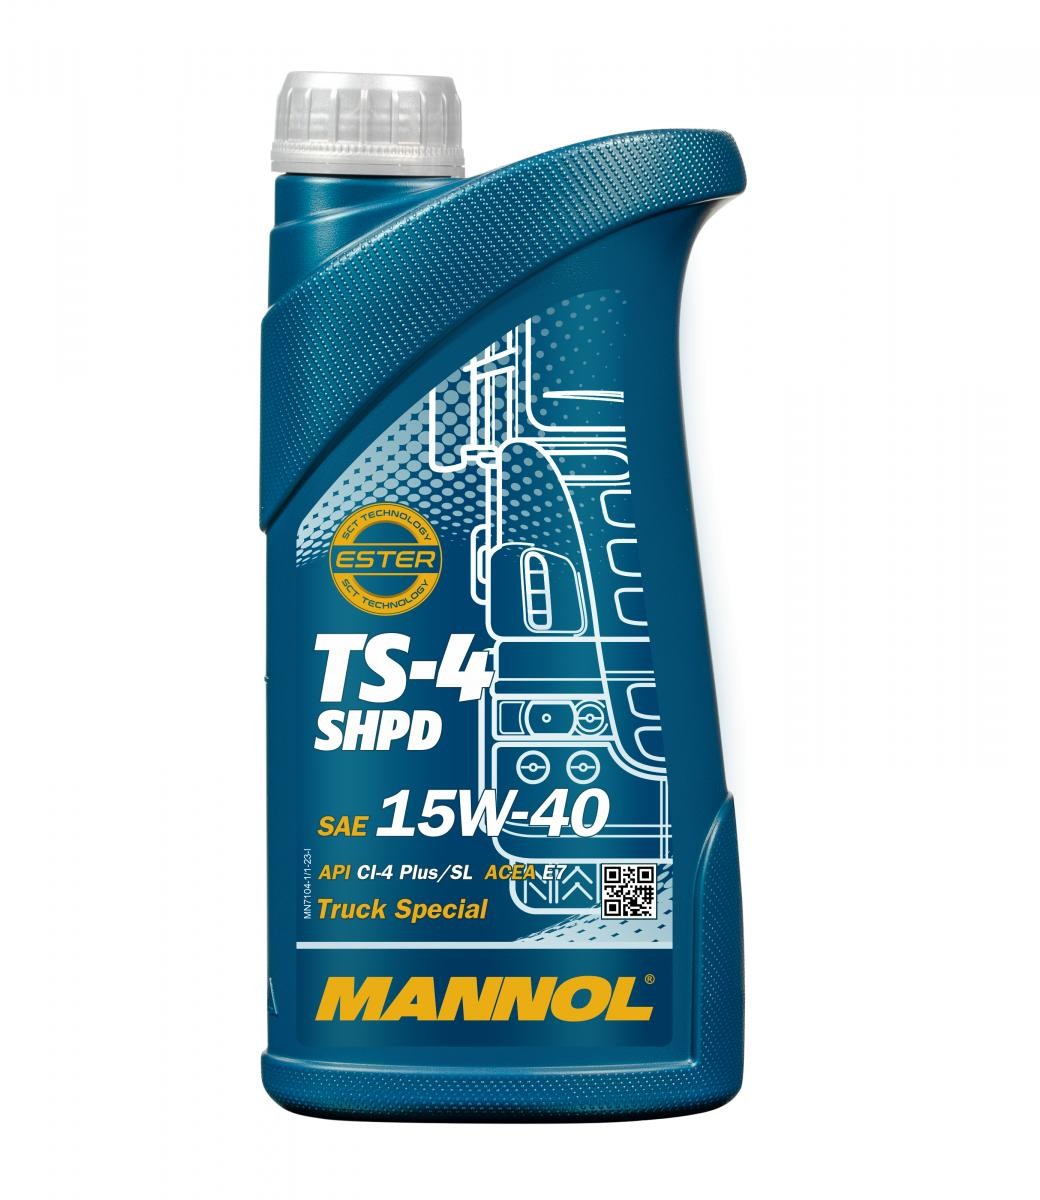 Auto oil API CF MANNOL - MN7104-1 TS-4, SHPD